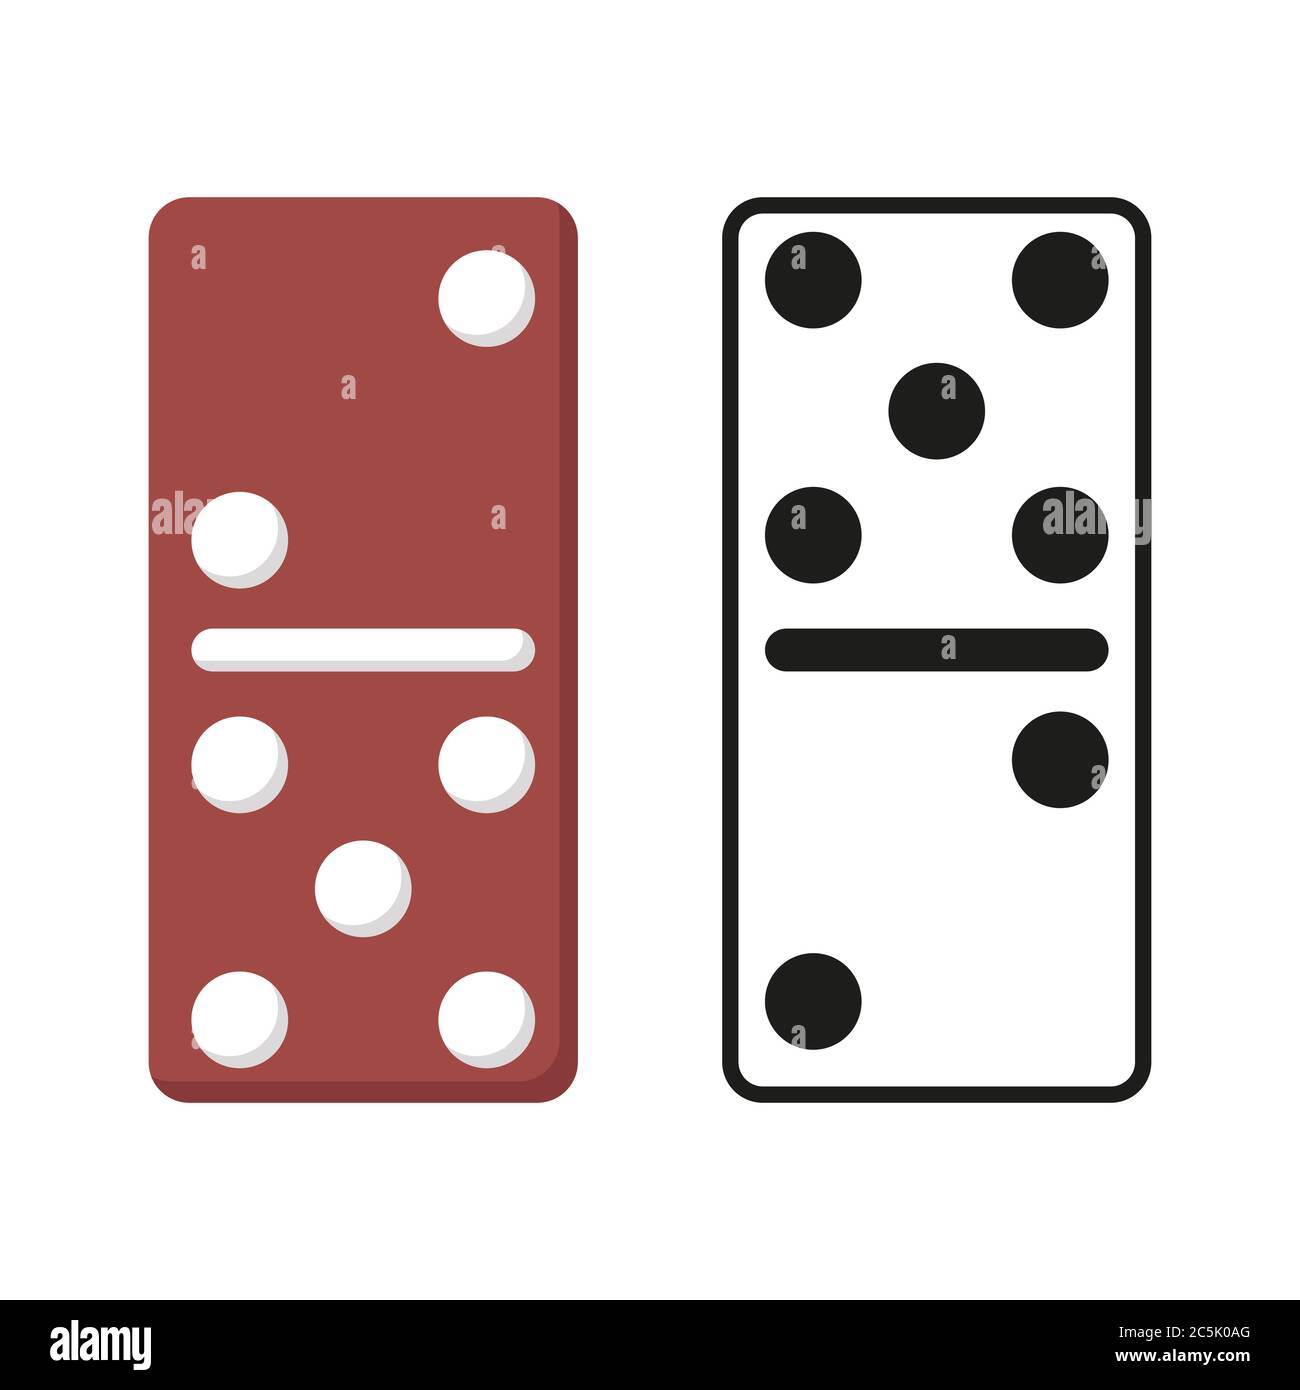 Domino è un gioco da tavolo conosciuto da quasi ogni persona fin  dall'infanzia. Illustrazione vettoriale stock per il tuo disegno grafico  Immagine e Vettoriale - Alamy